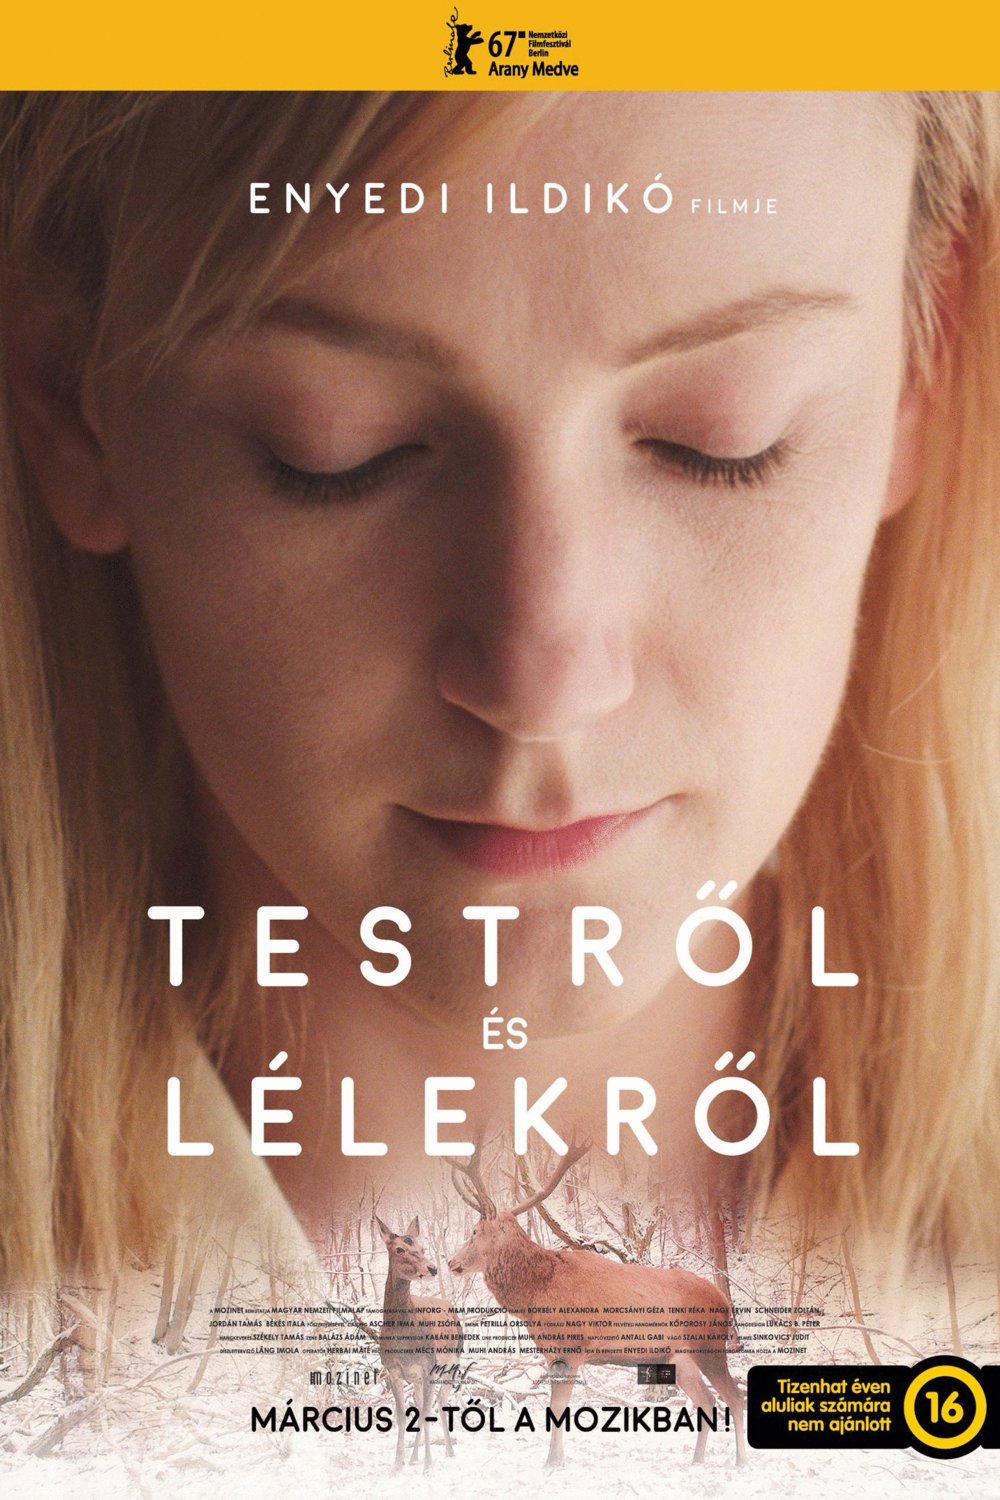 L'affiche originale du film Teströl és lélekröl en hongrois